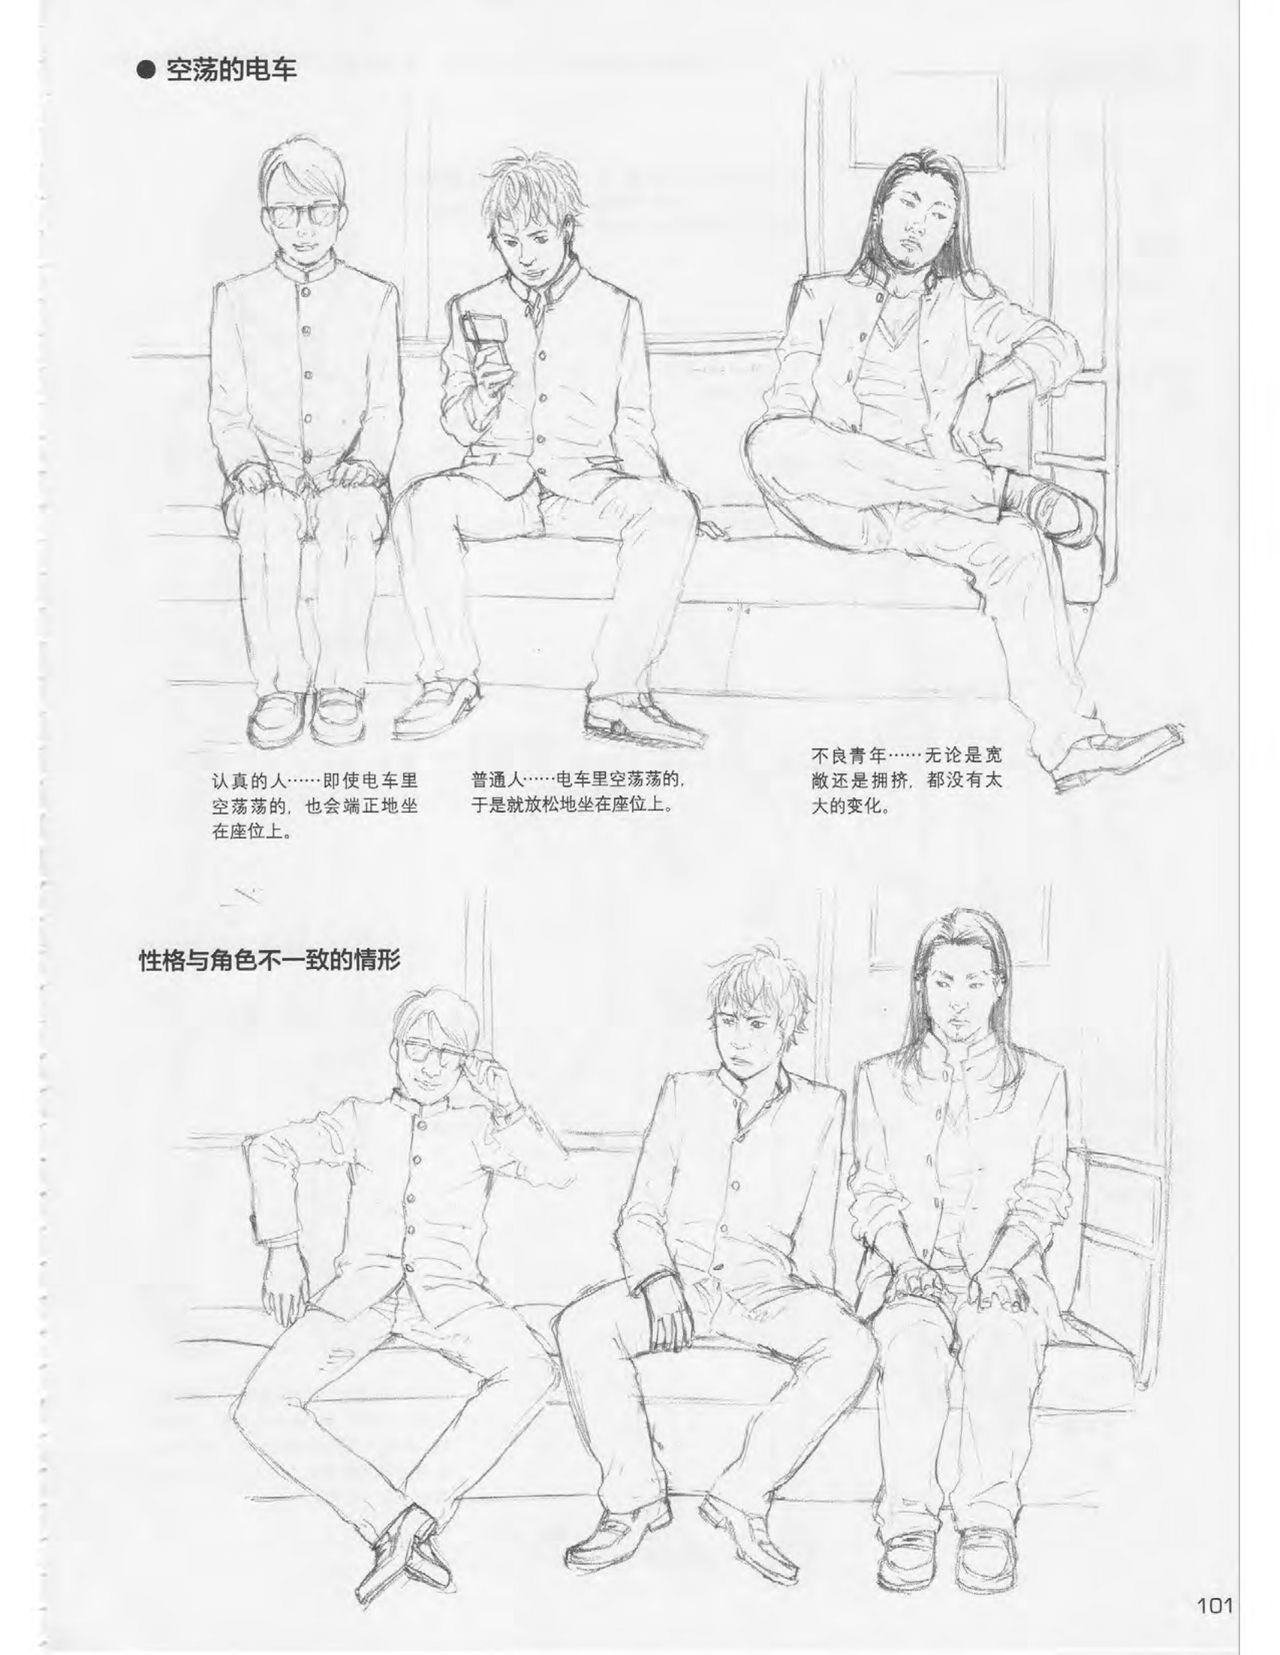 Japanese Manga Master Lecture 3: Lin Akira and Kakumaru Maru Talk About Glamorous Character Modeling 101